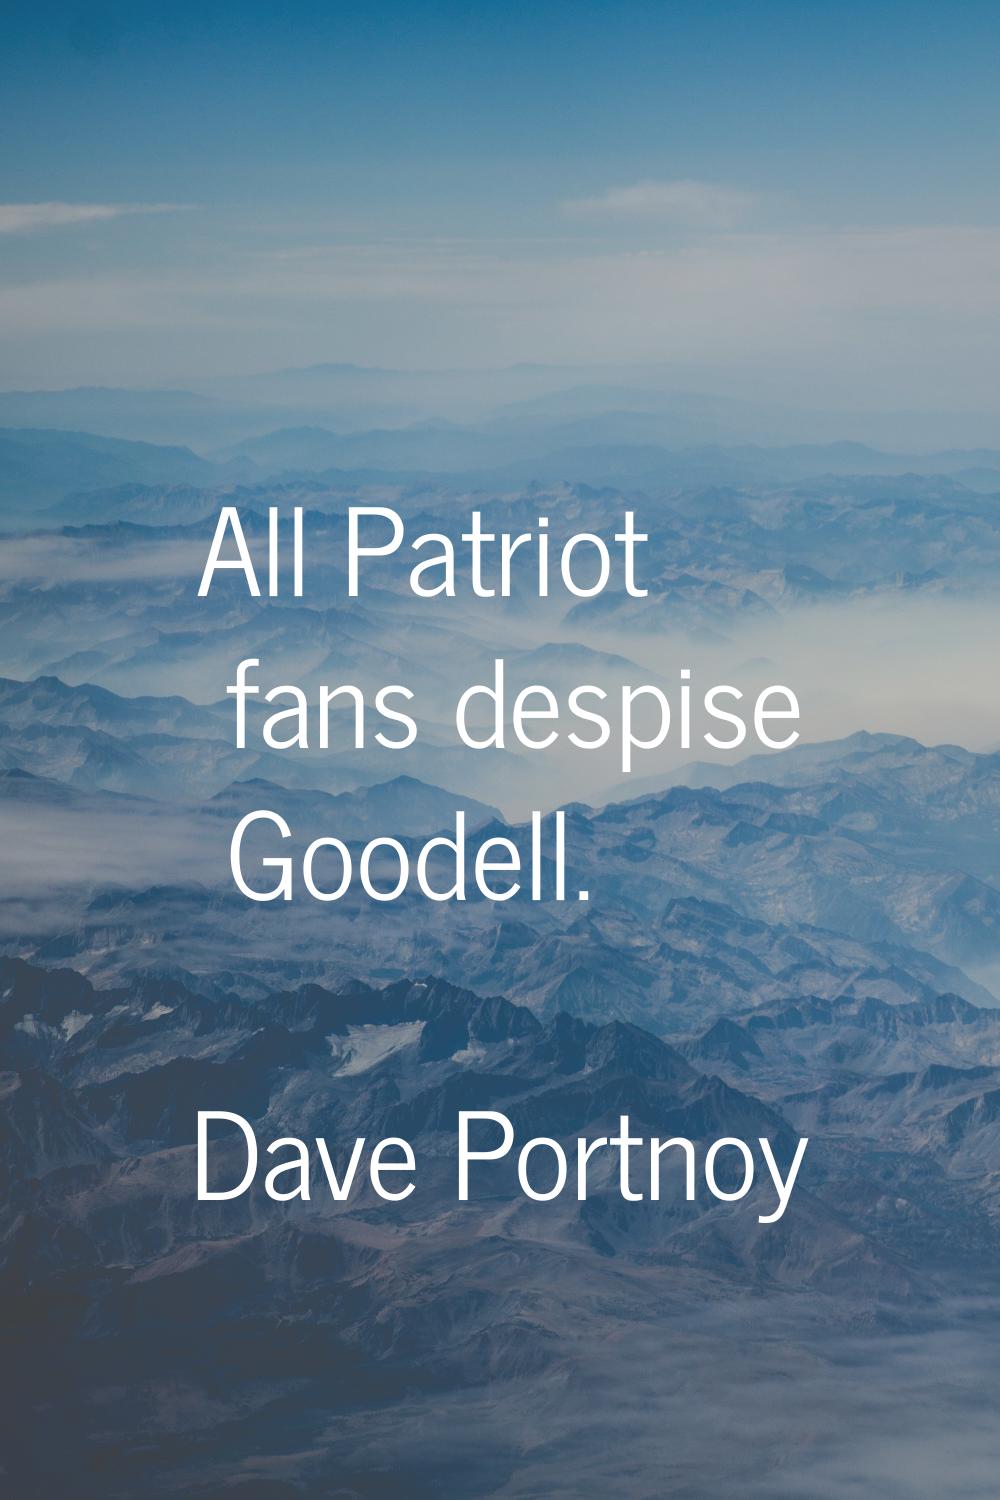 All Patriot fans despise Goodell.